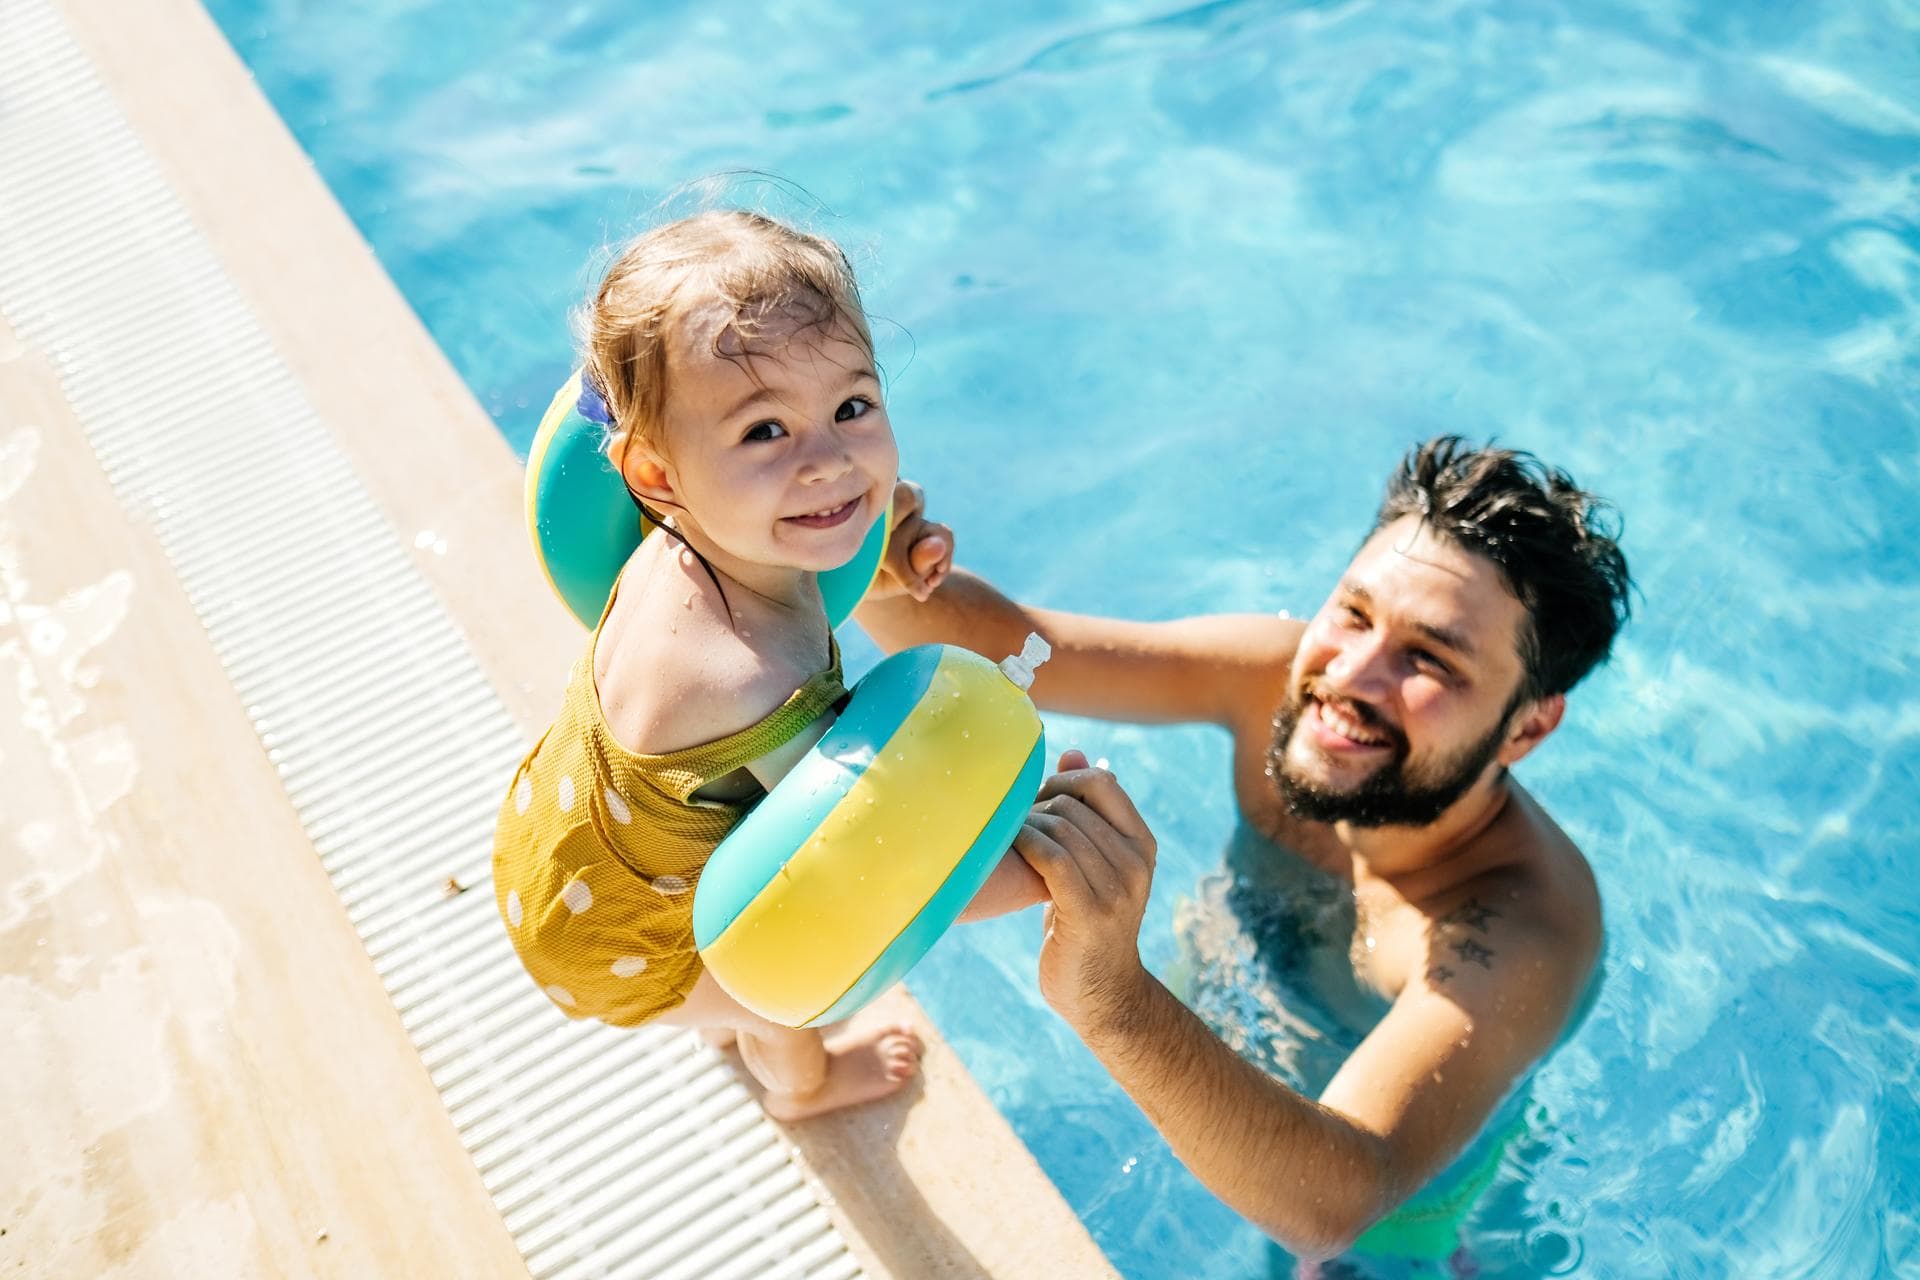 Kind veilig in het water: hoe doe je dat als je kind nog niet kan zwemmen?